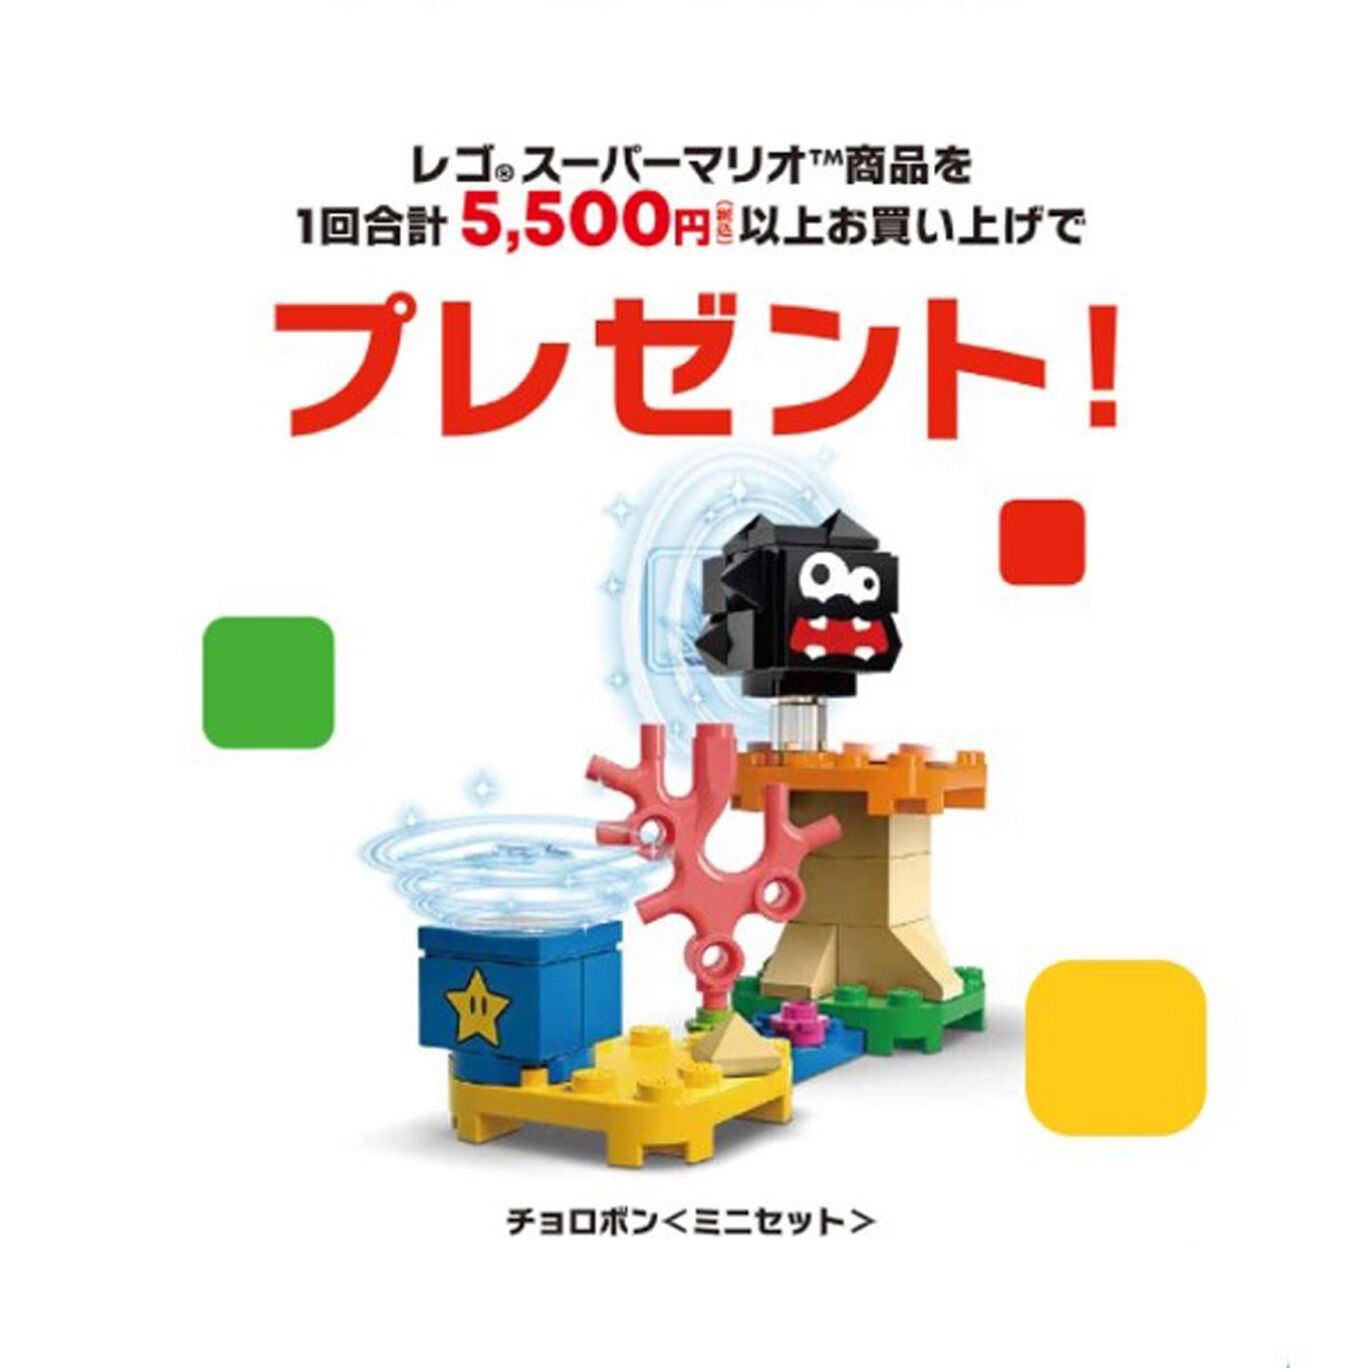 【新商品】レゴ®スーパーマリオ ヨッシー と ワクワク おくりもの チャレンジ